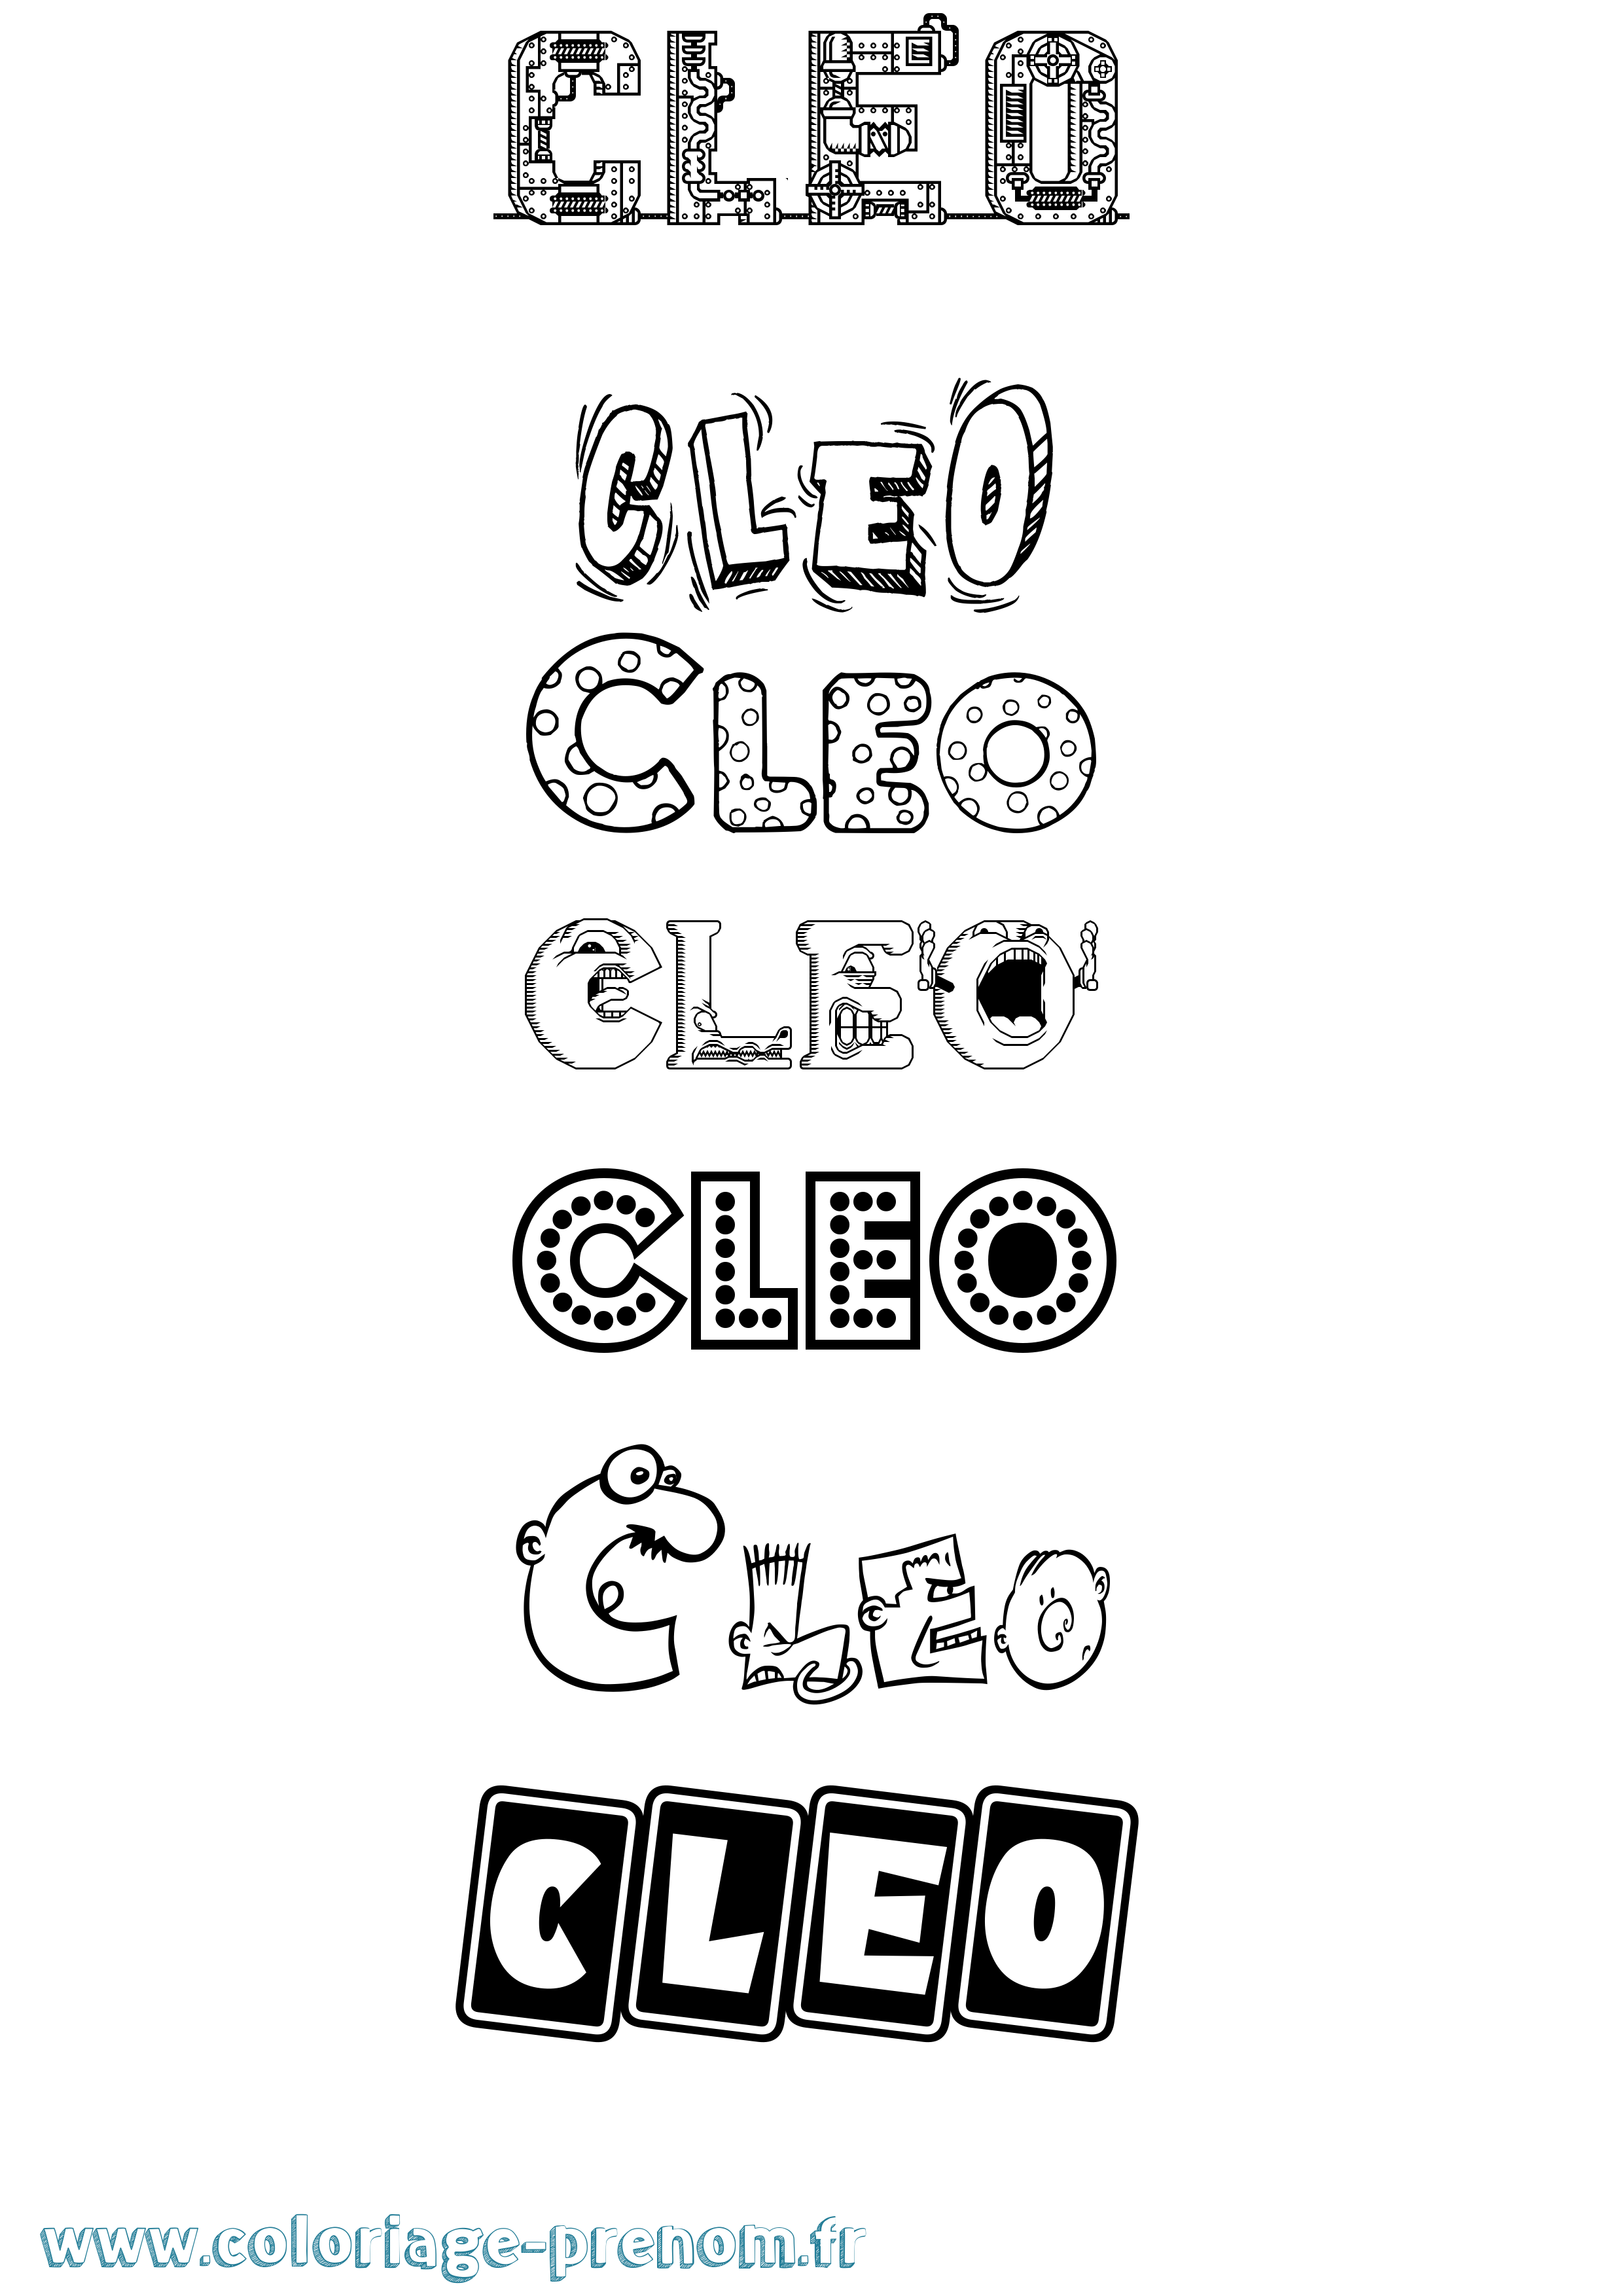 Coloriage prénom Cleo Fun